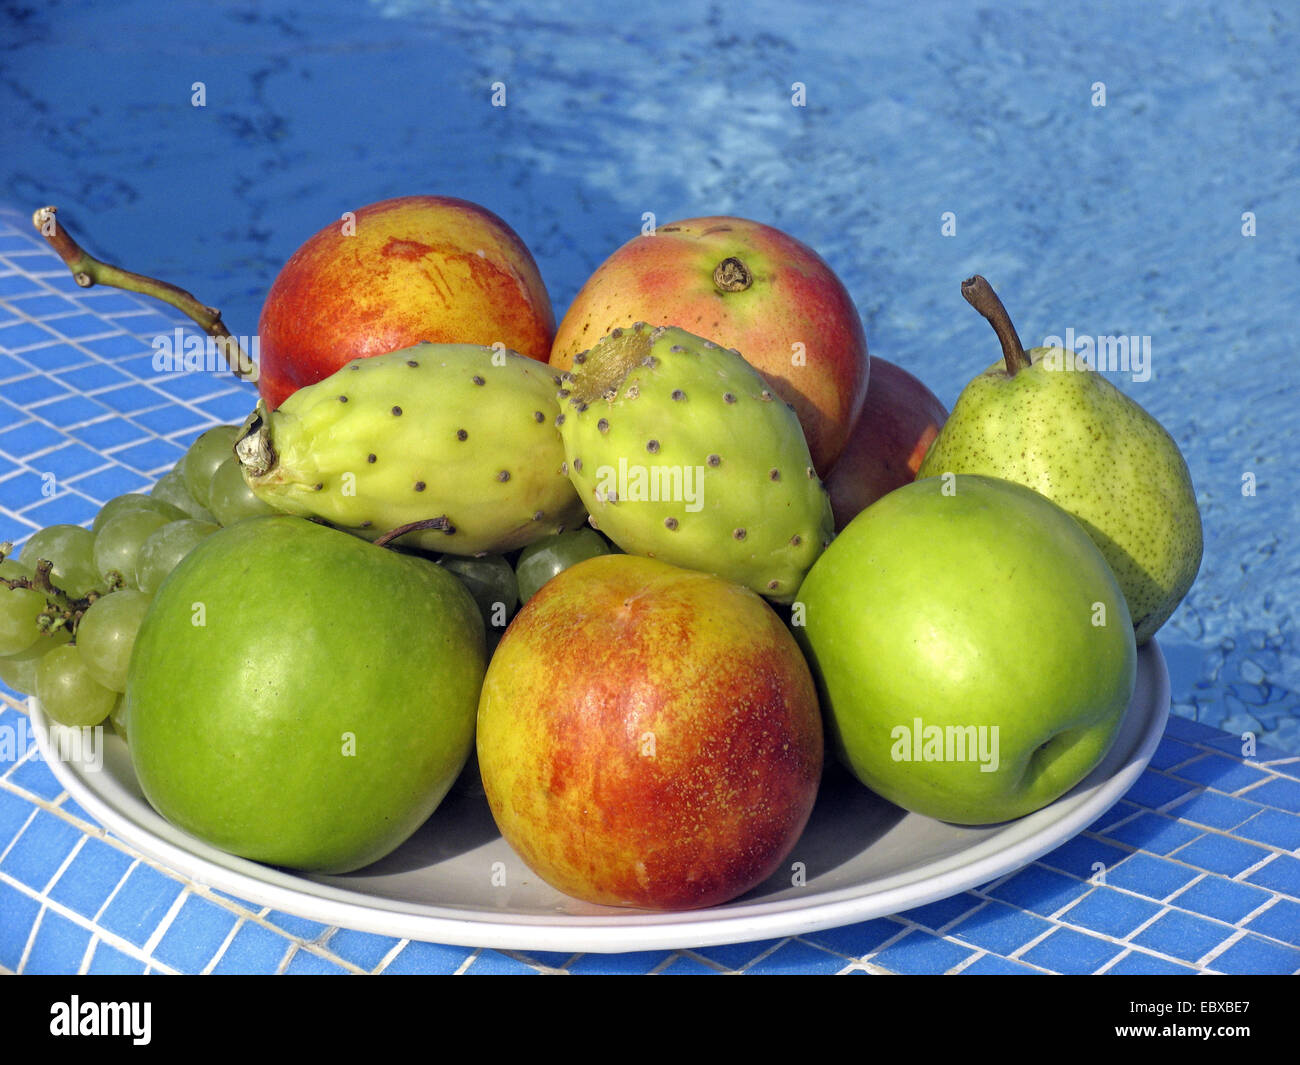 Les fruits (pommes, poires, raisins et de figuiers de Barbarie) sur la plaque de la piscine Banque D'Images